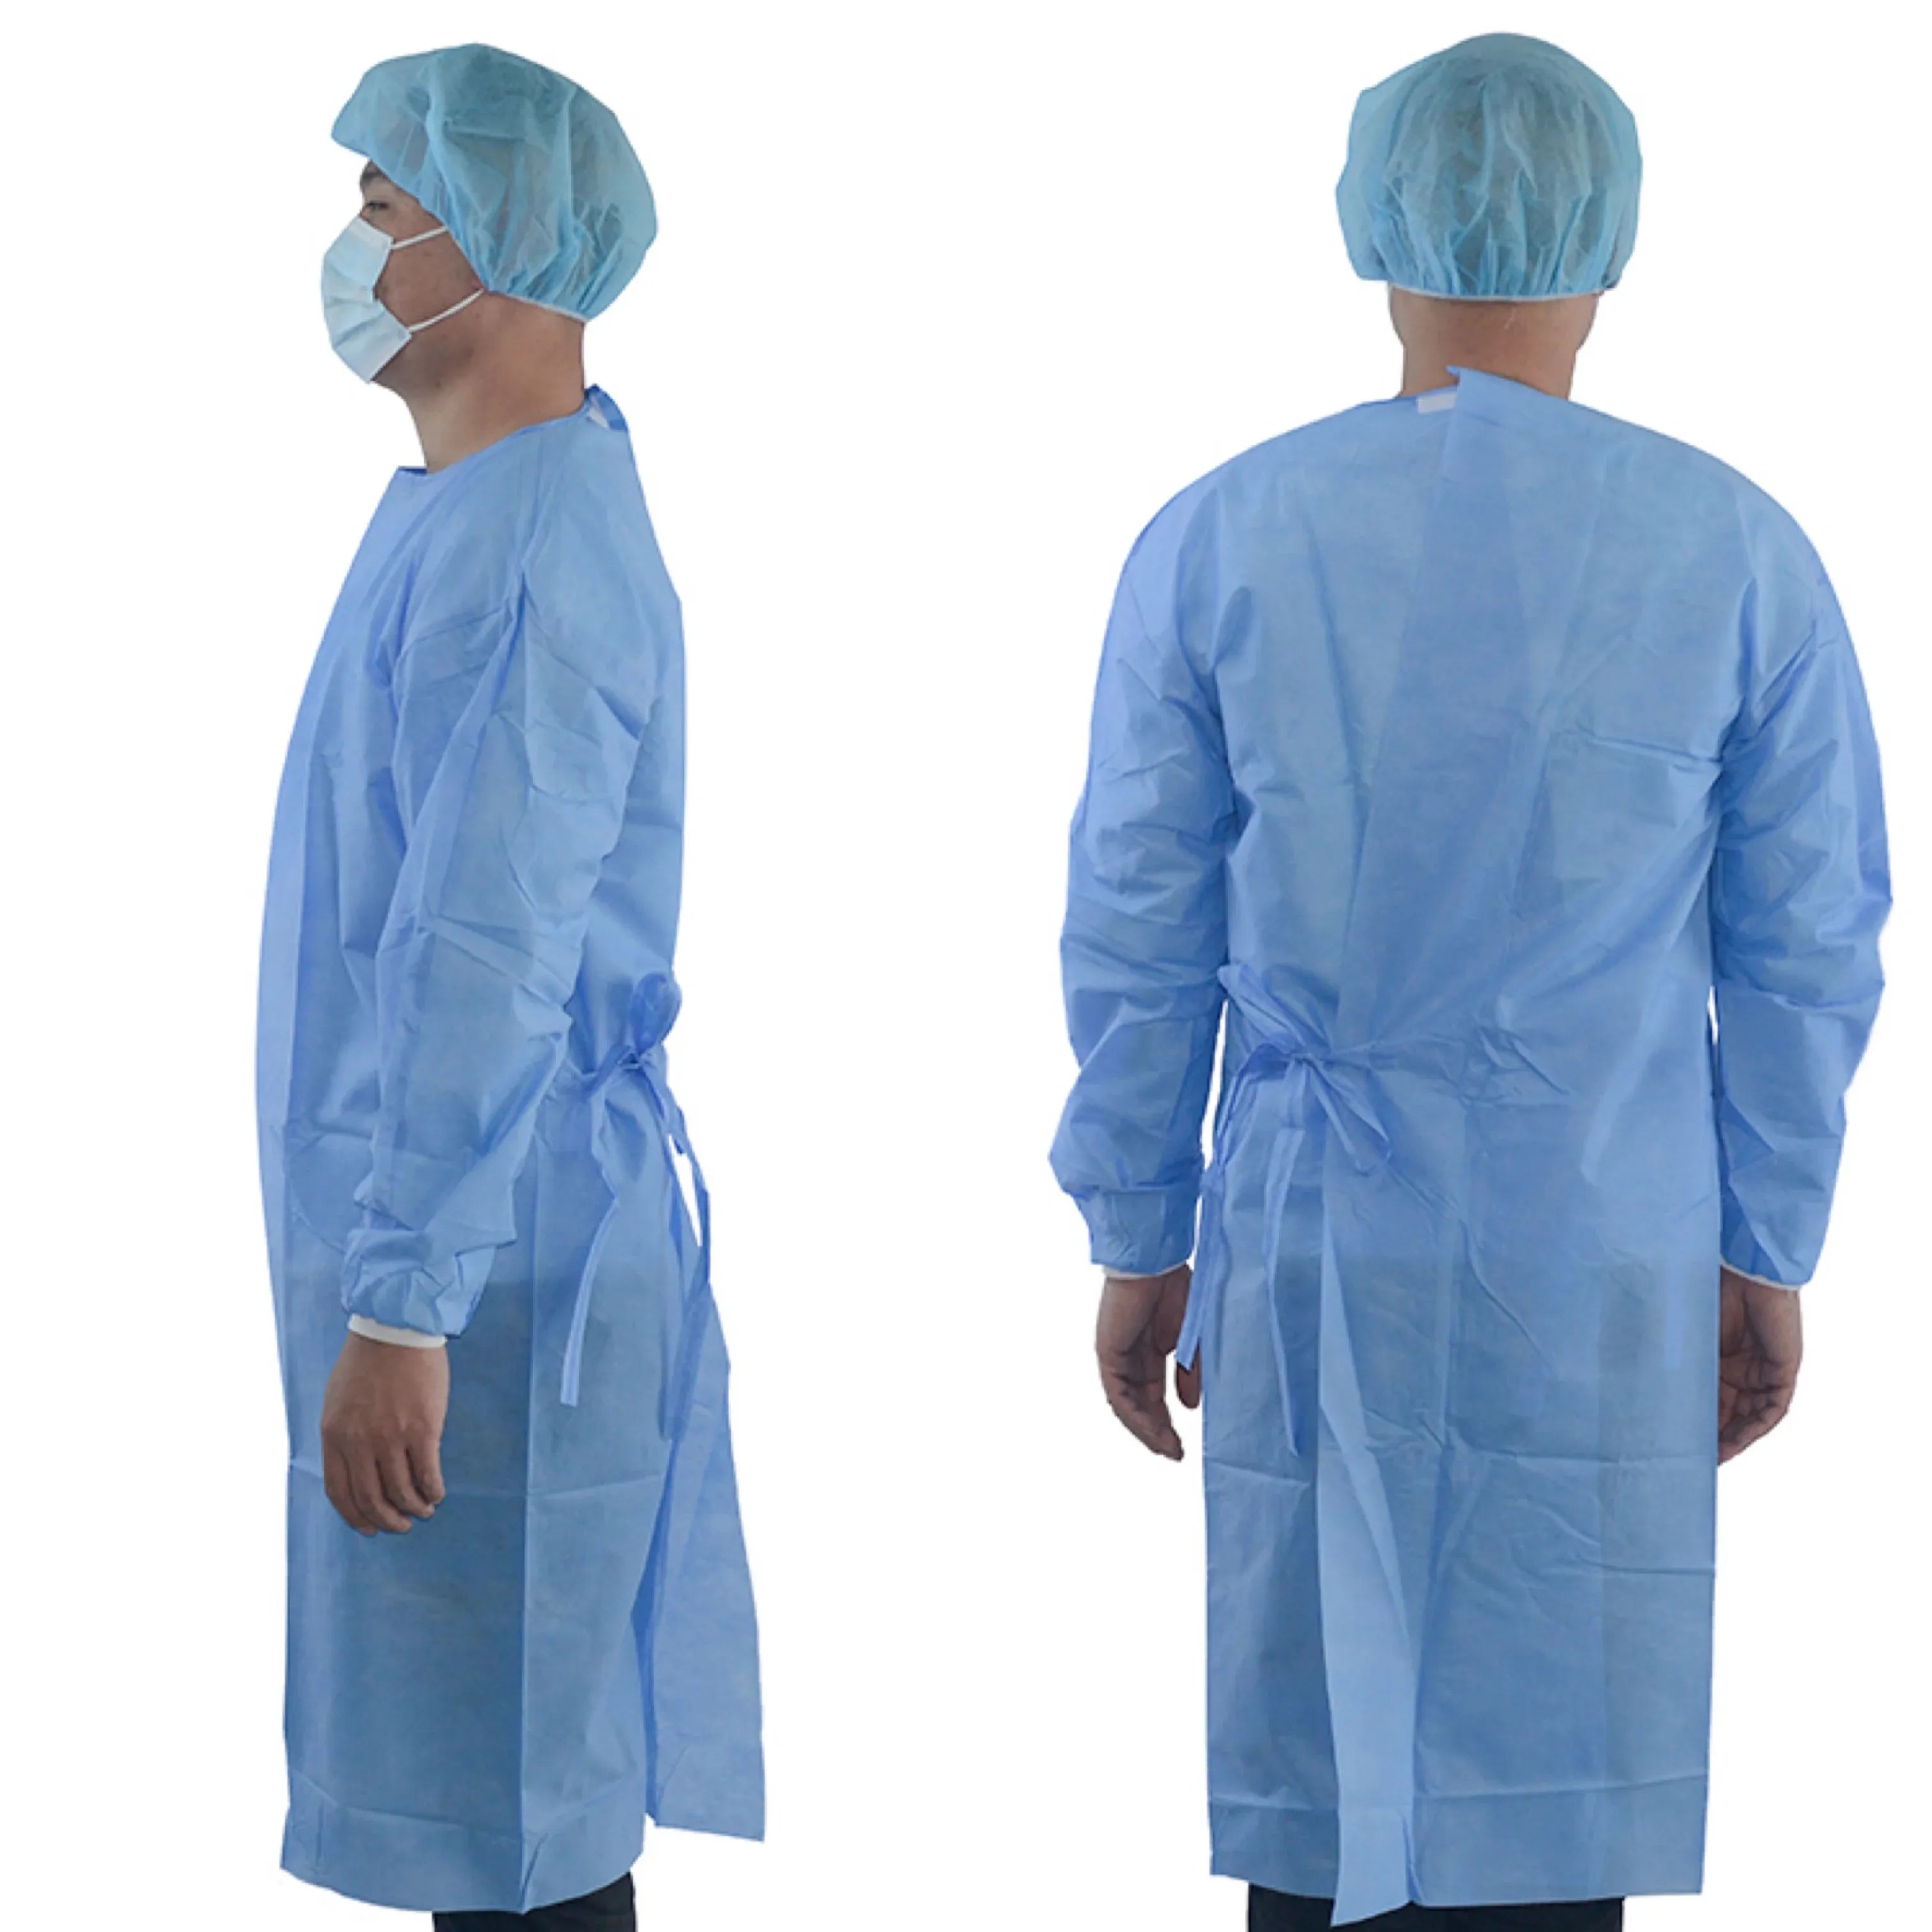 Einweg Krankenhaus Patienten Medizinische Entsorgung SMS Uniformen Kleid Vlies Chirurgische Isolation Kleider